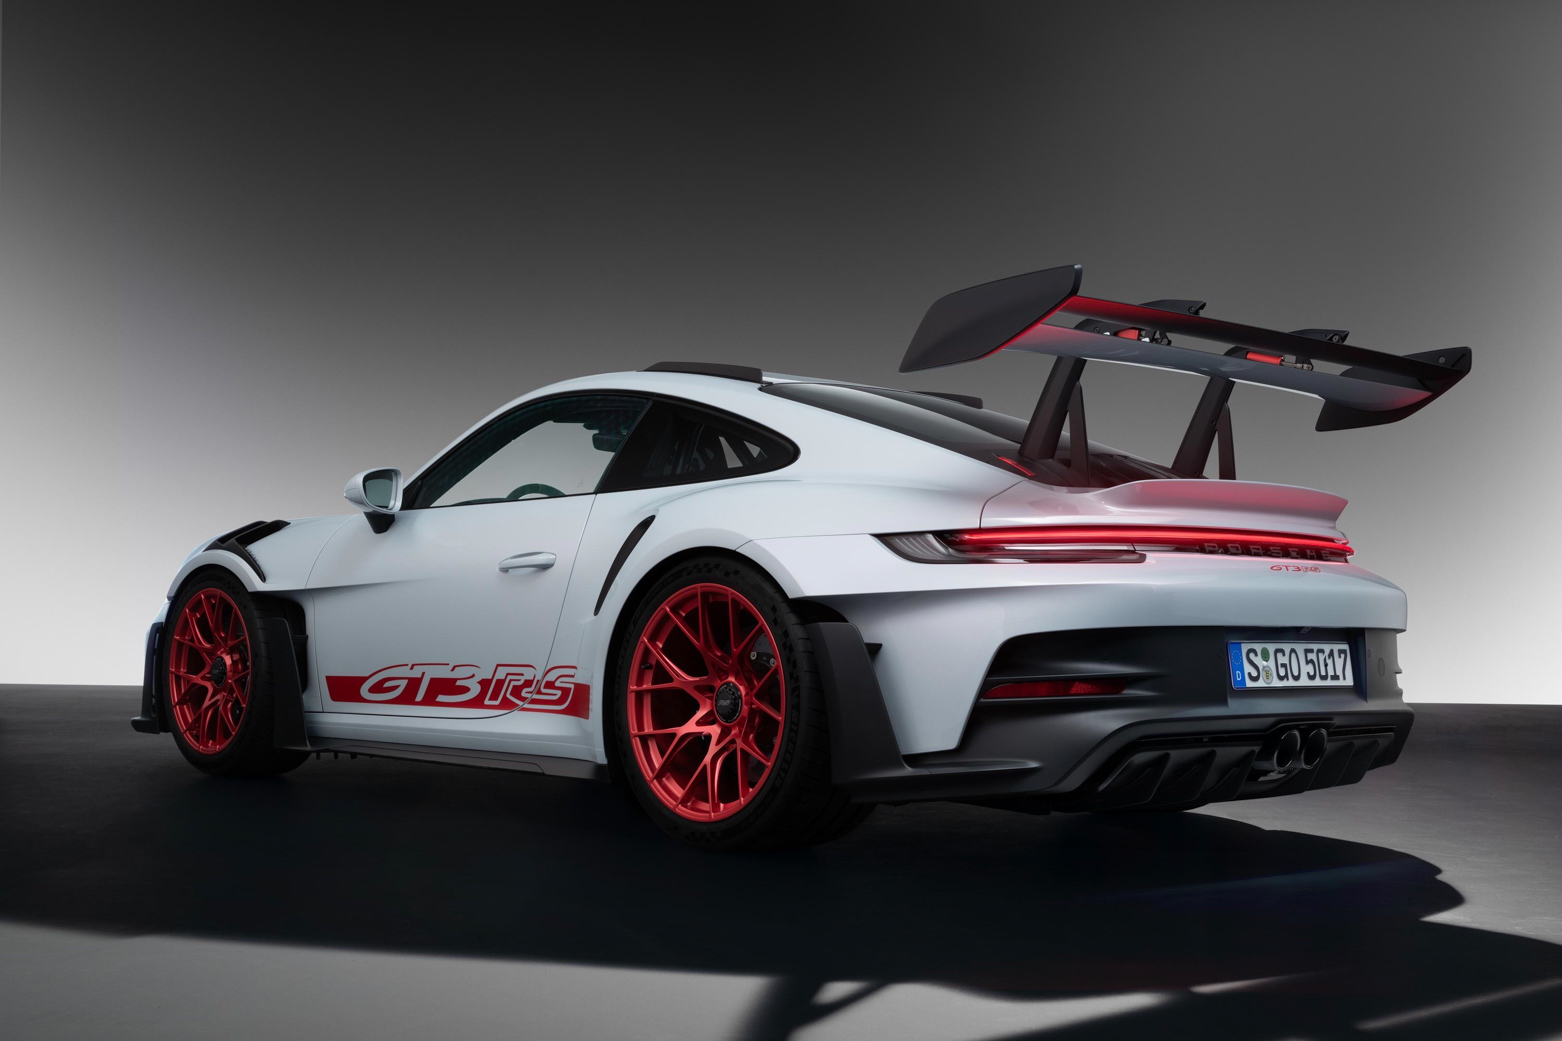 Chi tiết Porsche 911 GT3 RS thế hệ mới - ảnh 18